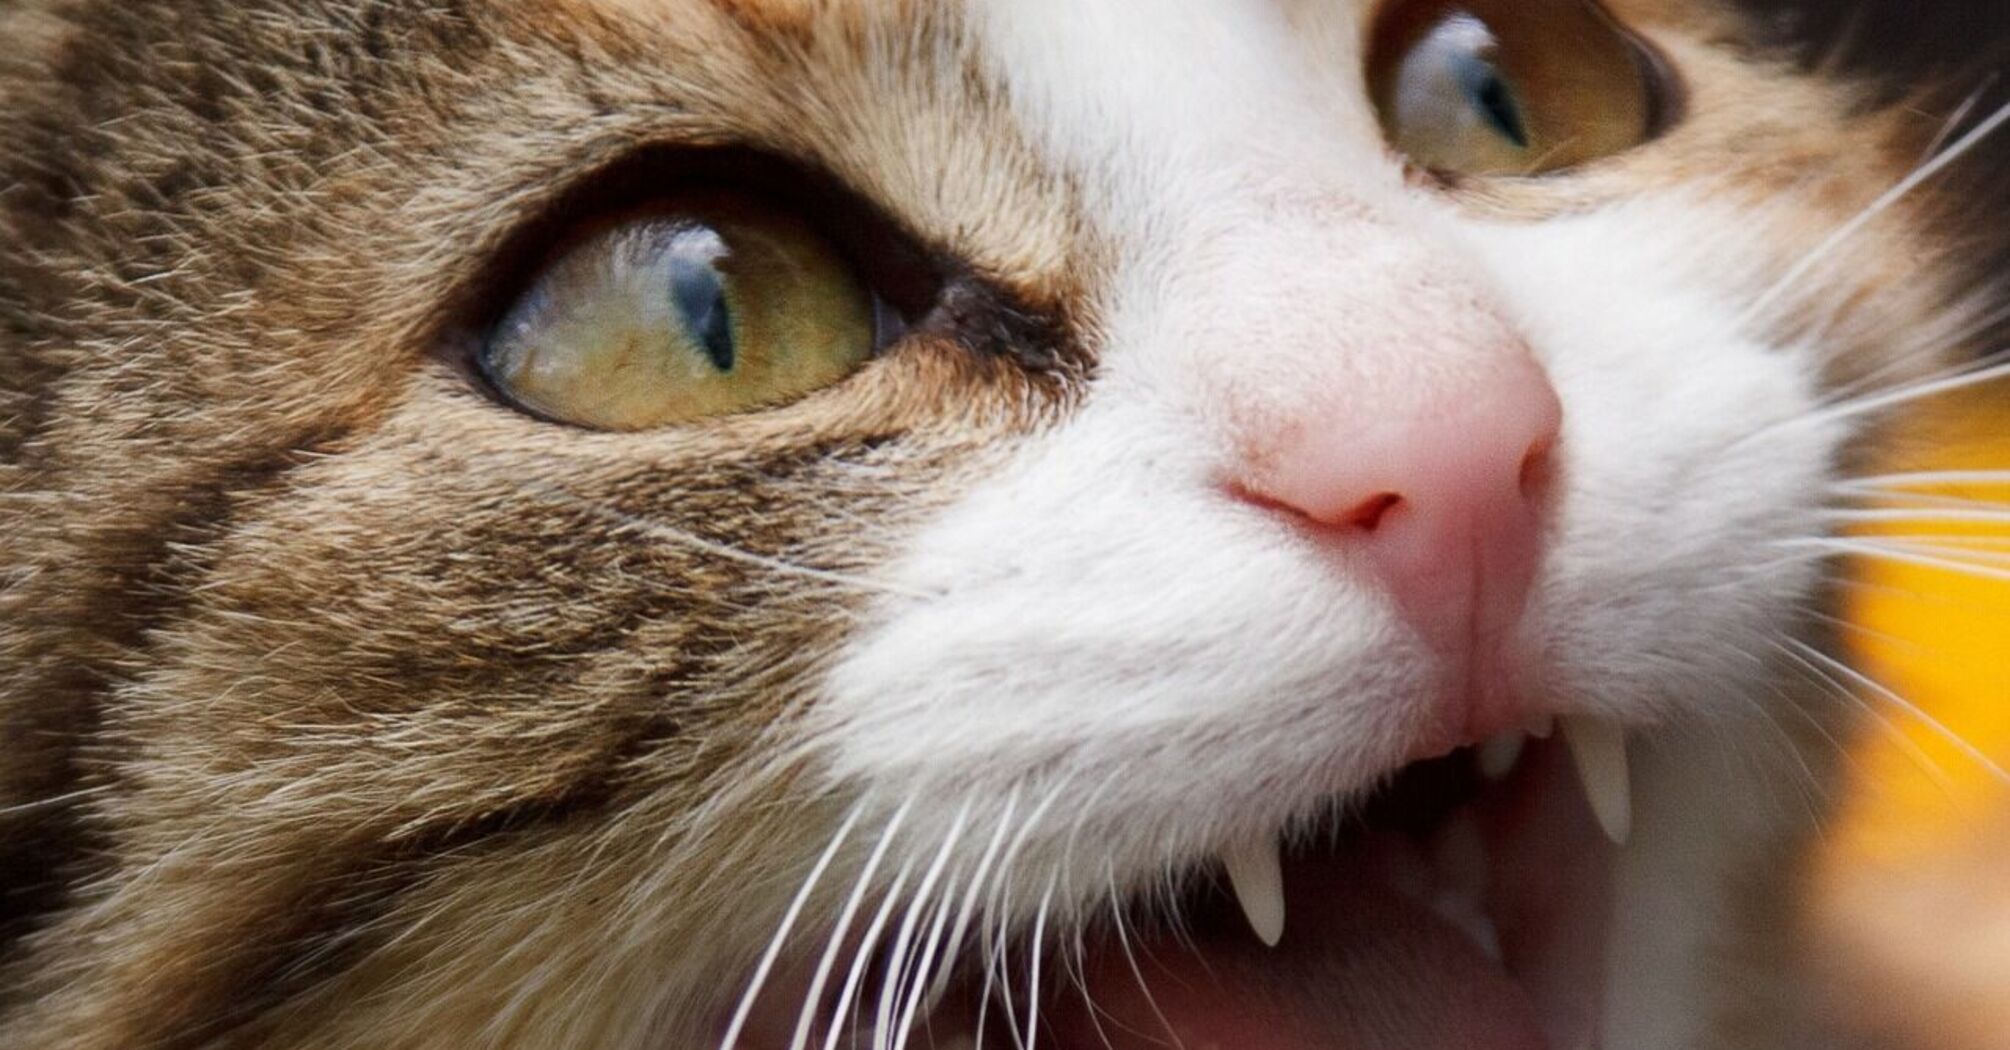  Вы раздражаете свою кошку: 5 поступков людей, которые выводят животных из себя